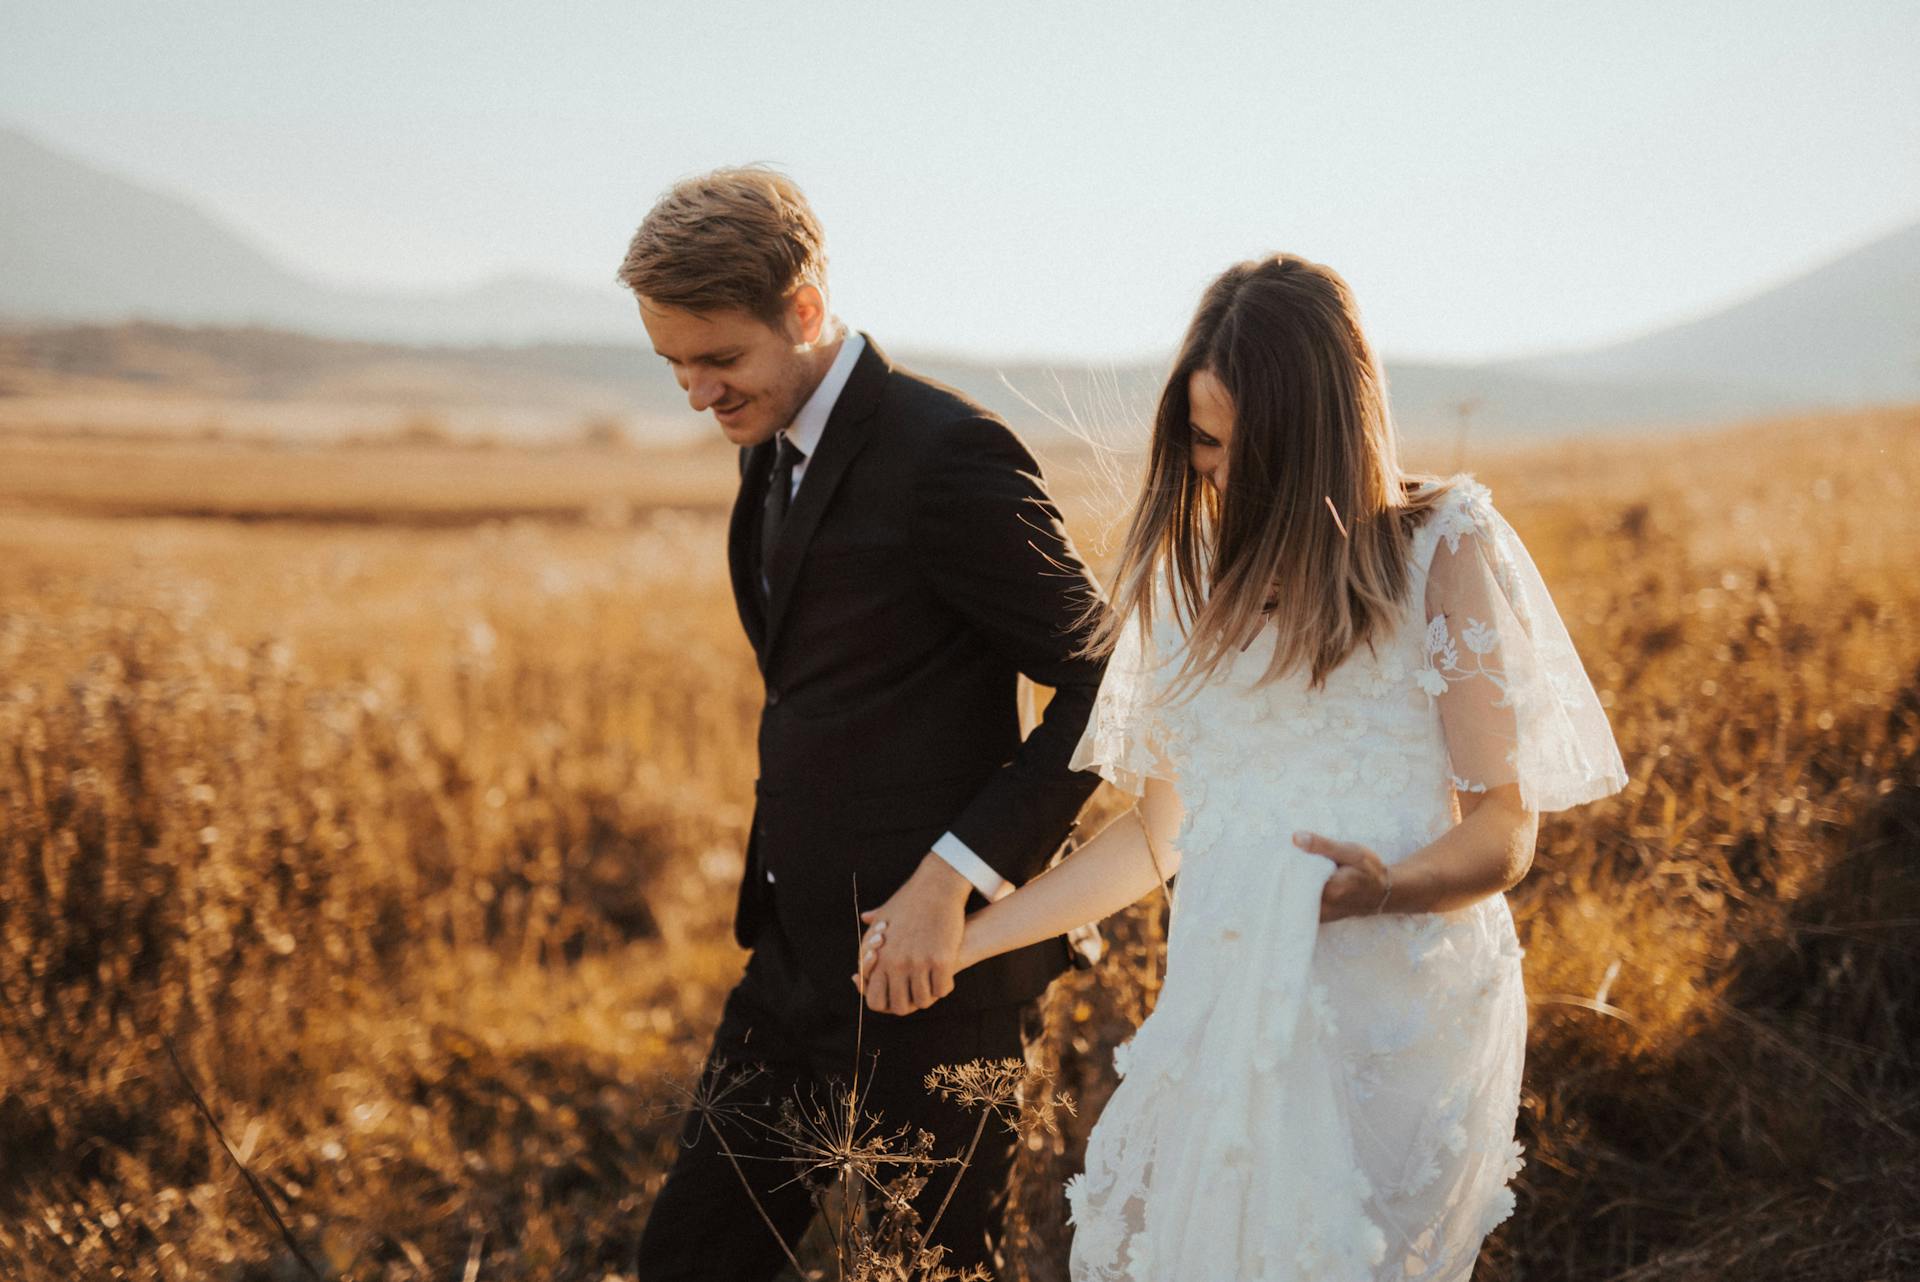 Un matrimonio en un campo | Foto: Pexels